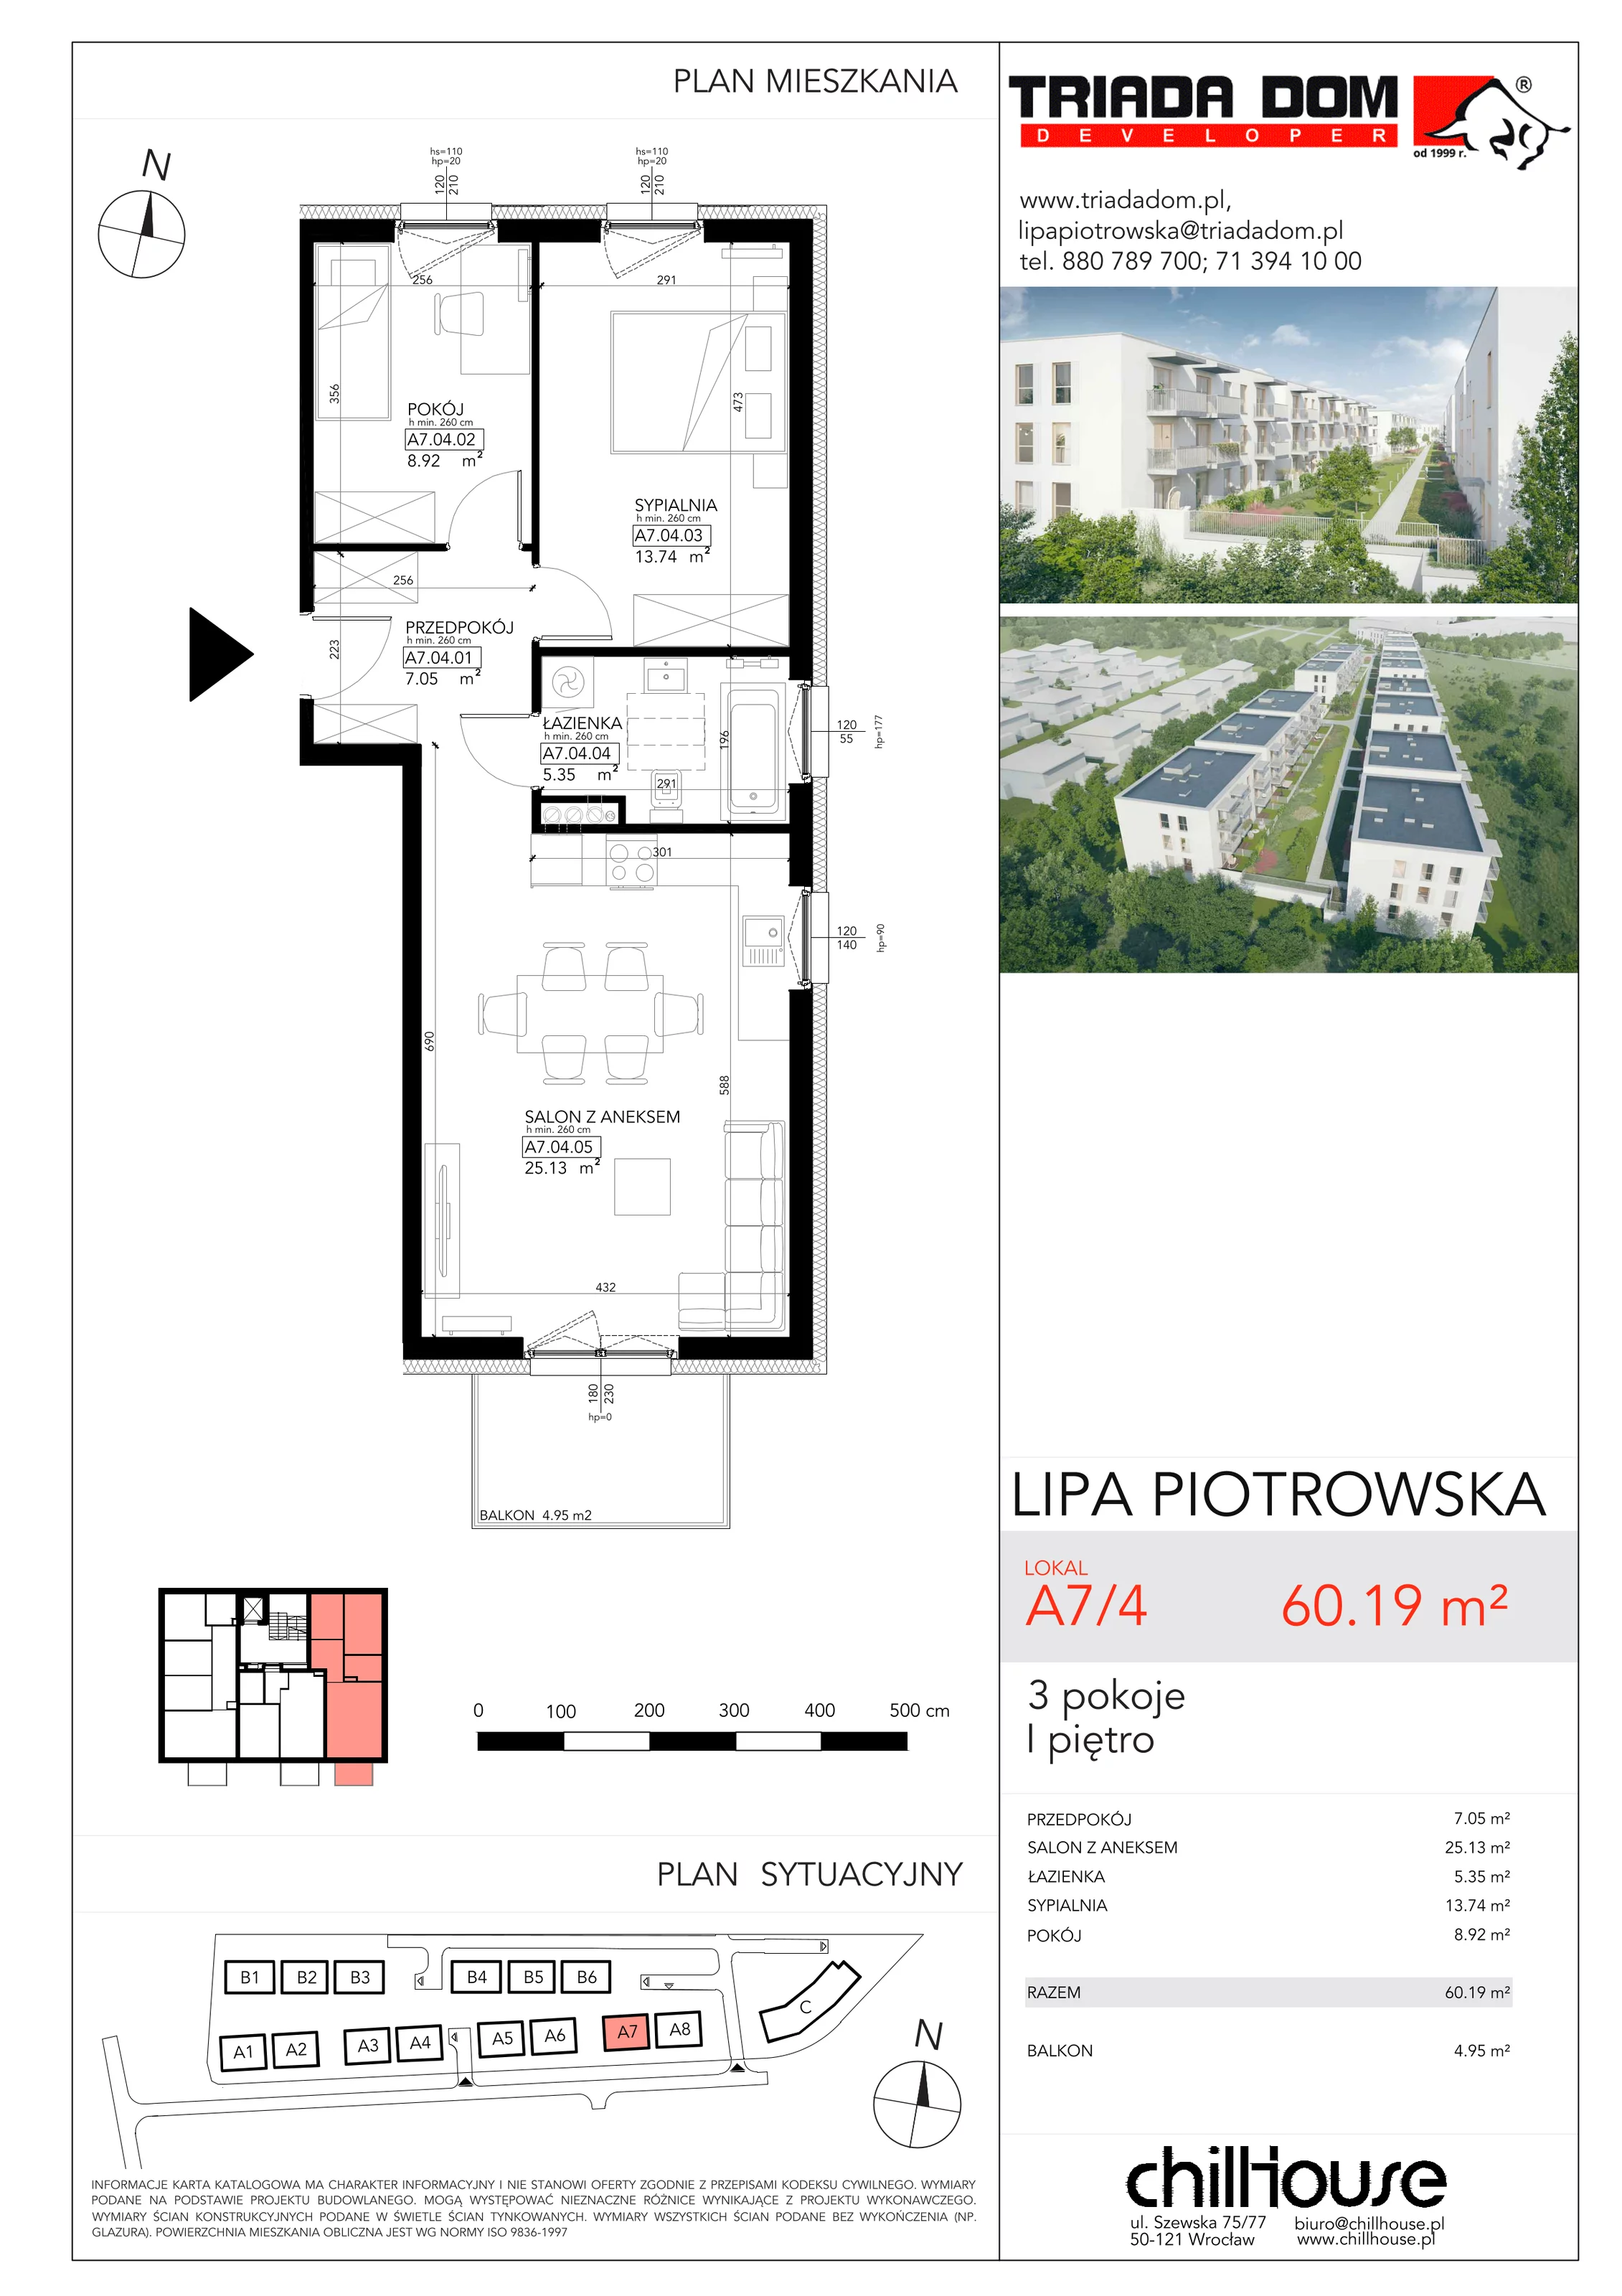 Mieszkanie 60,19 m², piętro 1, oferta nr A74, Lipa Piotrowska, Wrocław, Lipa Piotrowska, ul. Lawendowa / Melisowa